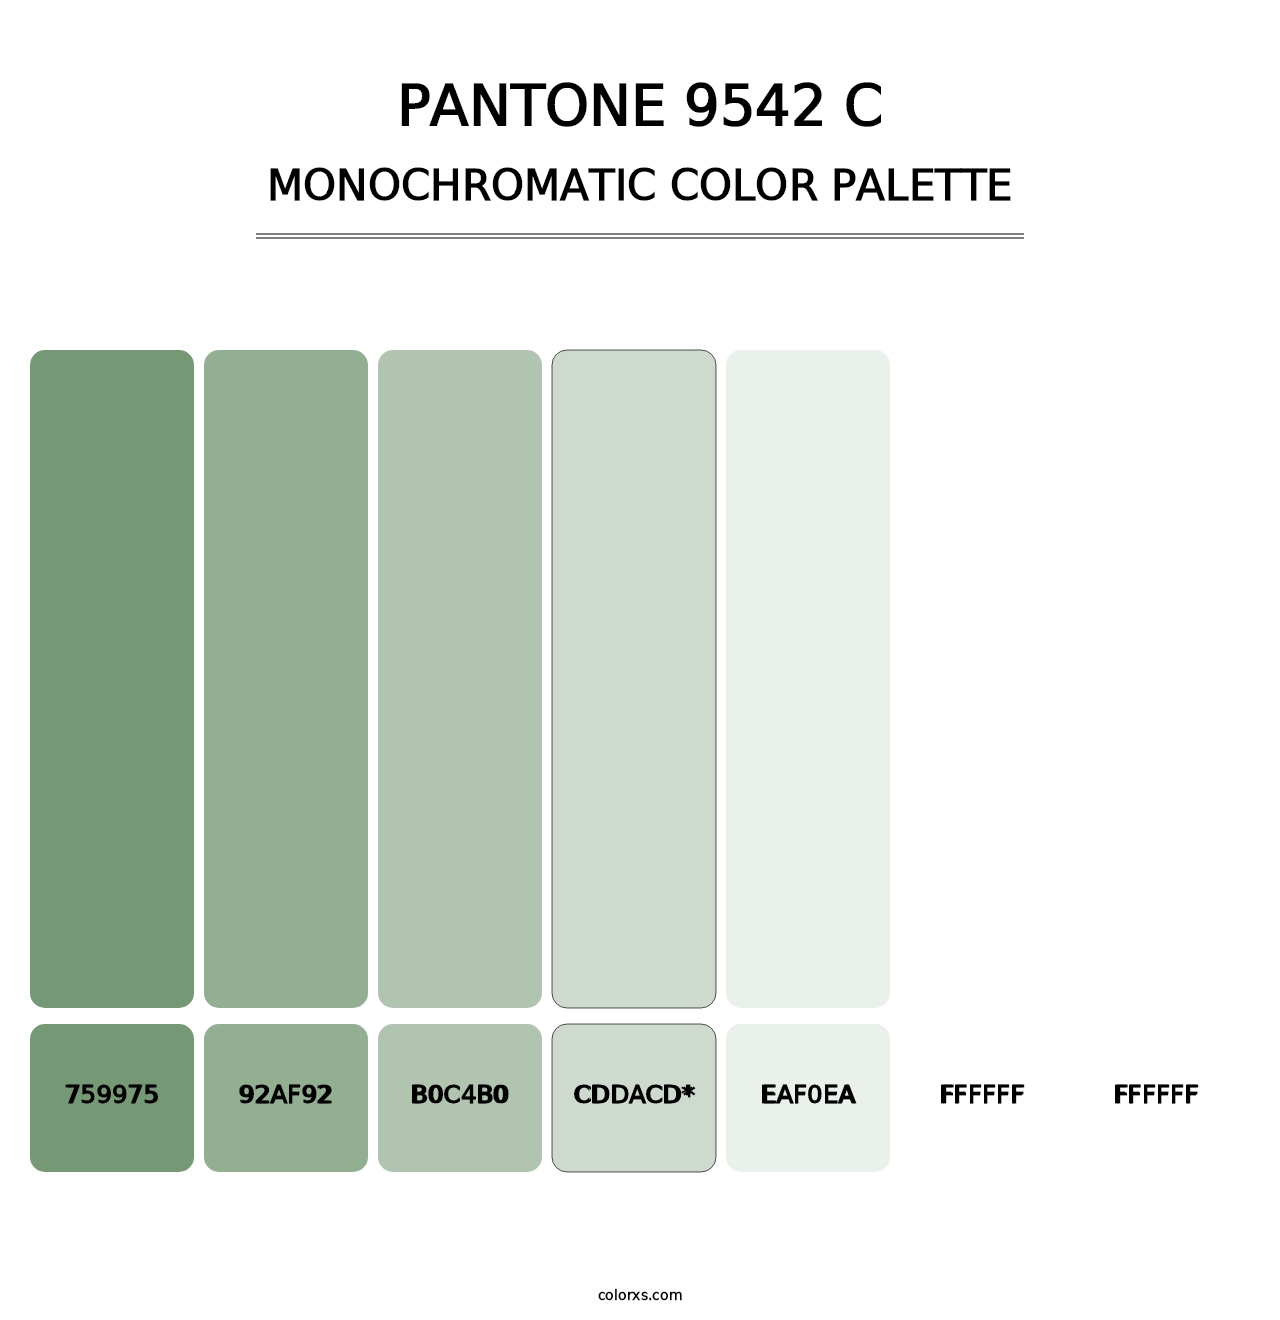 PANTONE 9542 C - Monochromatic Color Palette